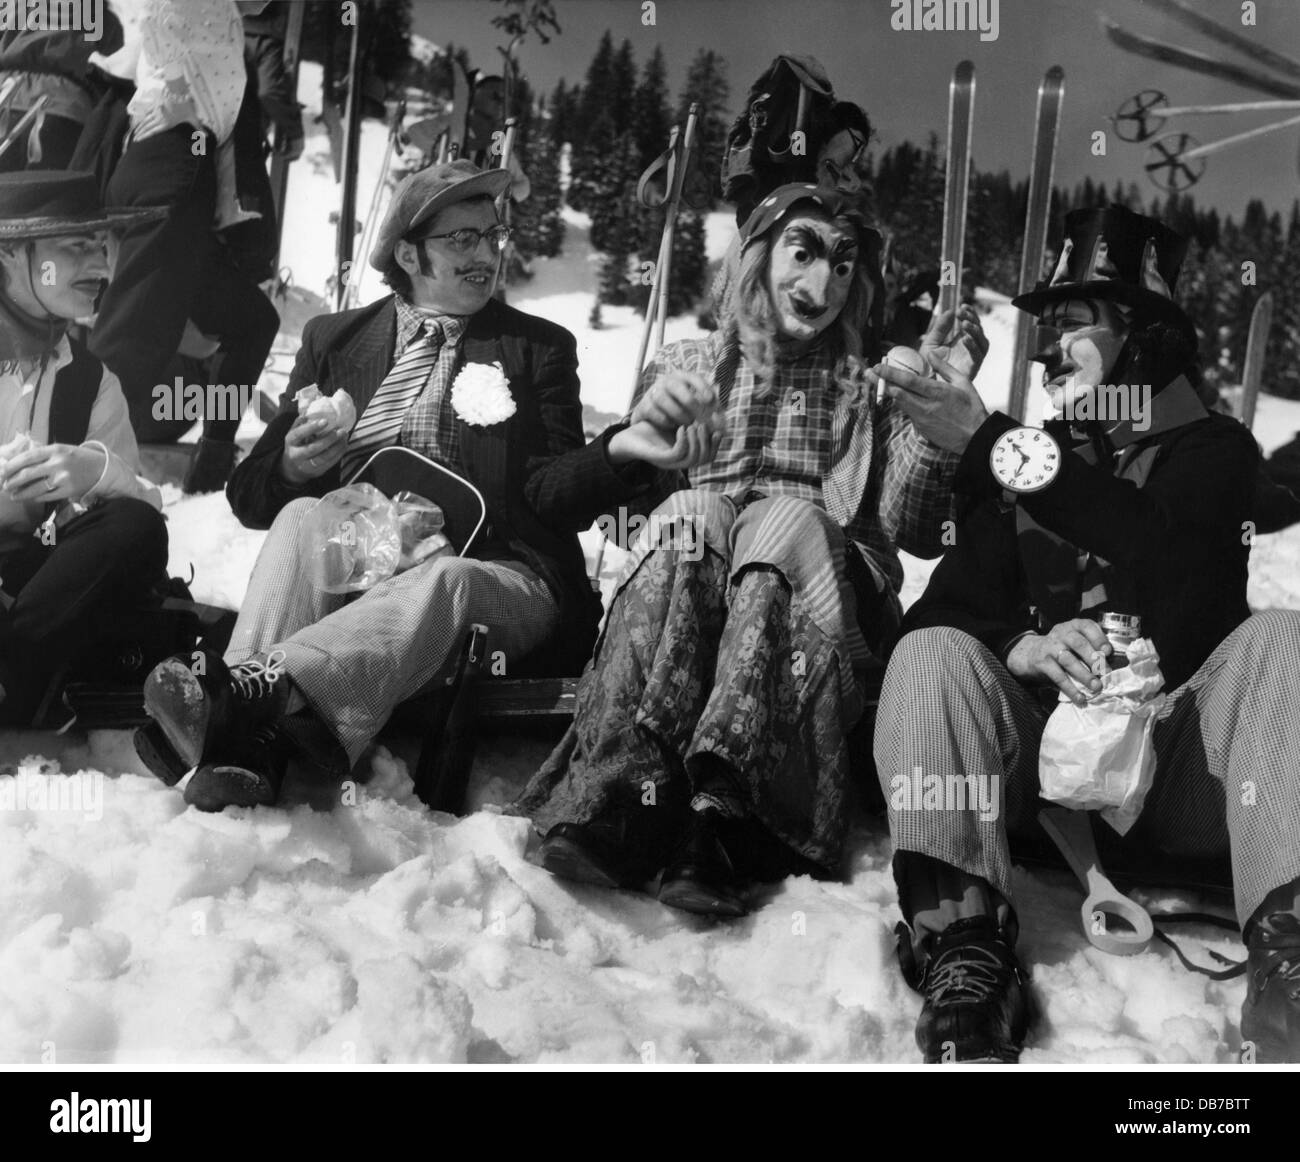 Festivités, carnaval, carnaval sur skis, skieurs costumés ayant une pause déjeuner, Firstamm, Schliersee, 1957, droits supplémentaires-Clearences-non disponible Banque D'Images